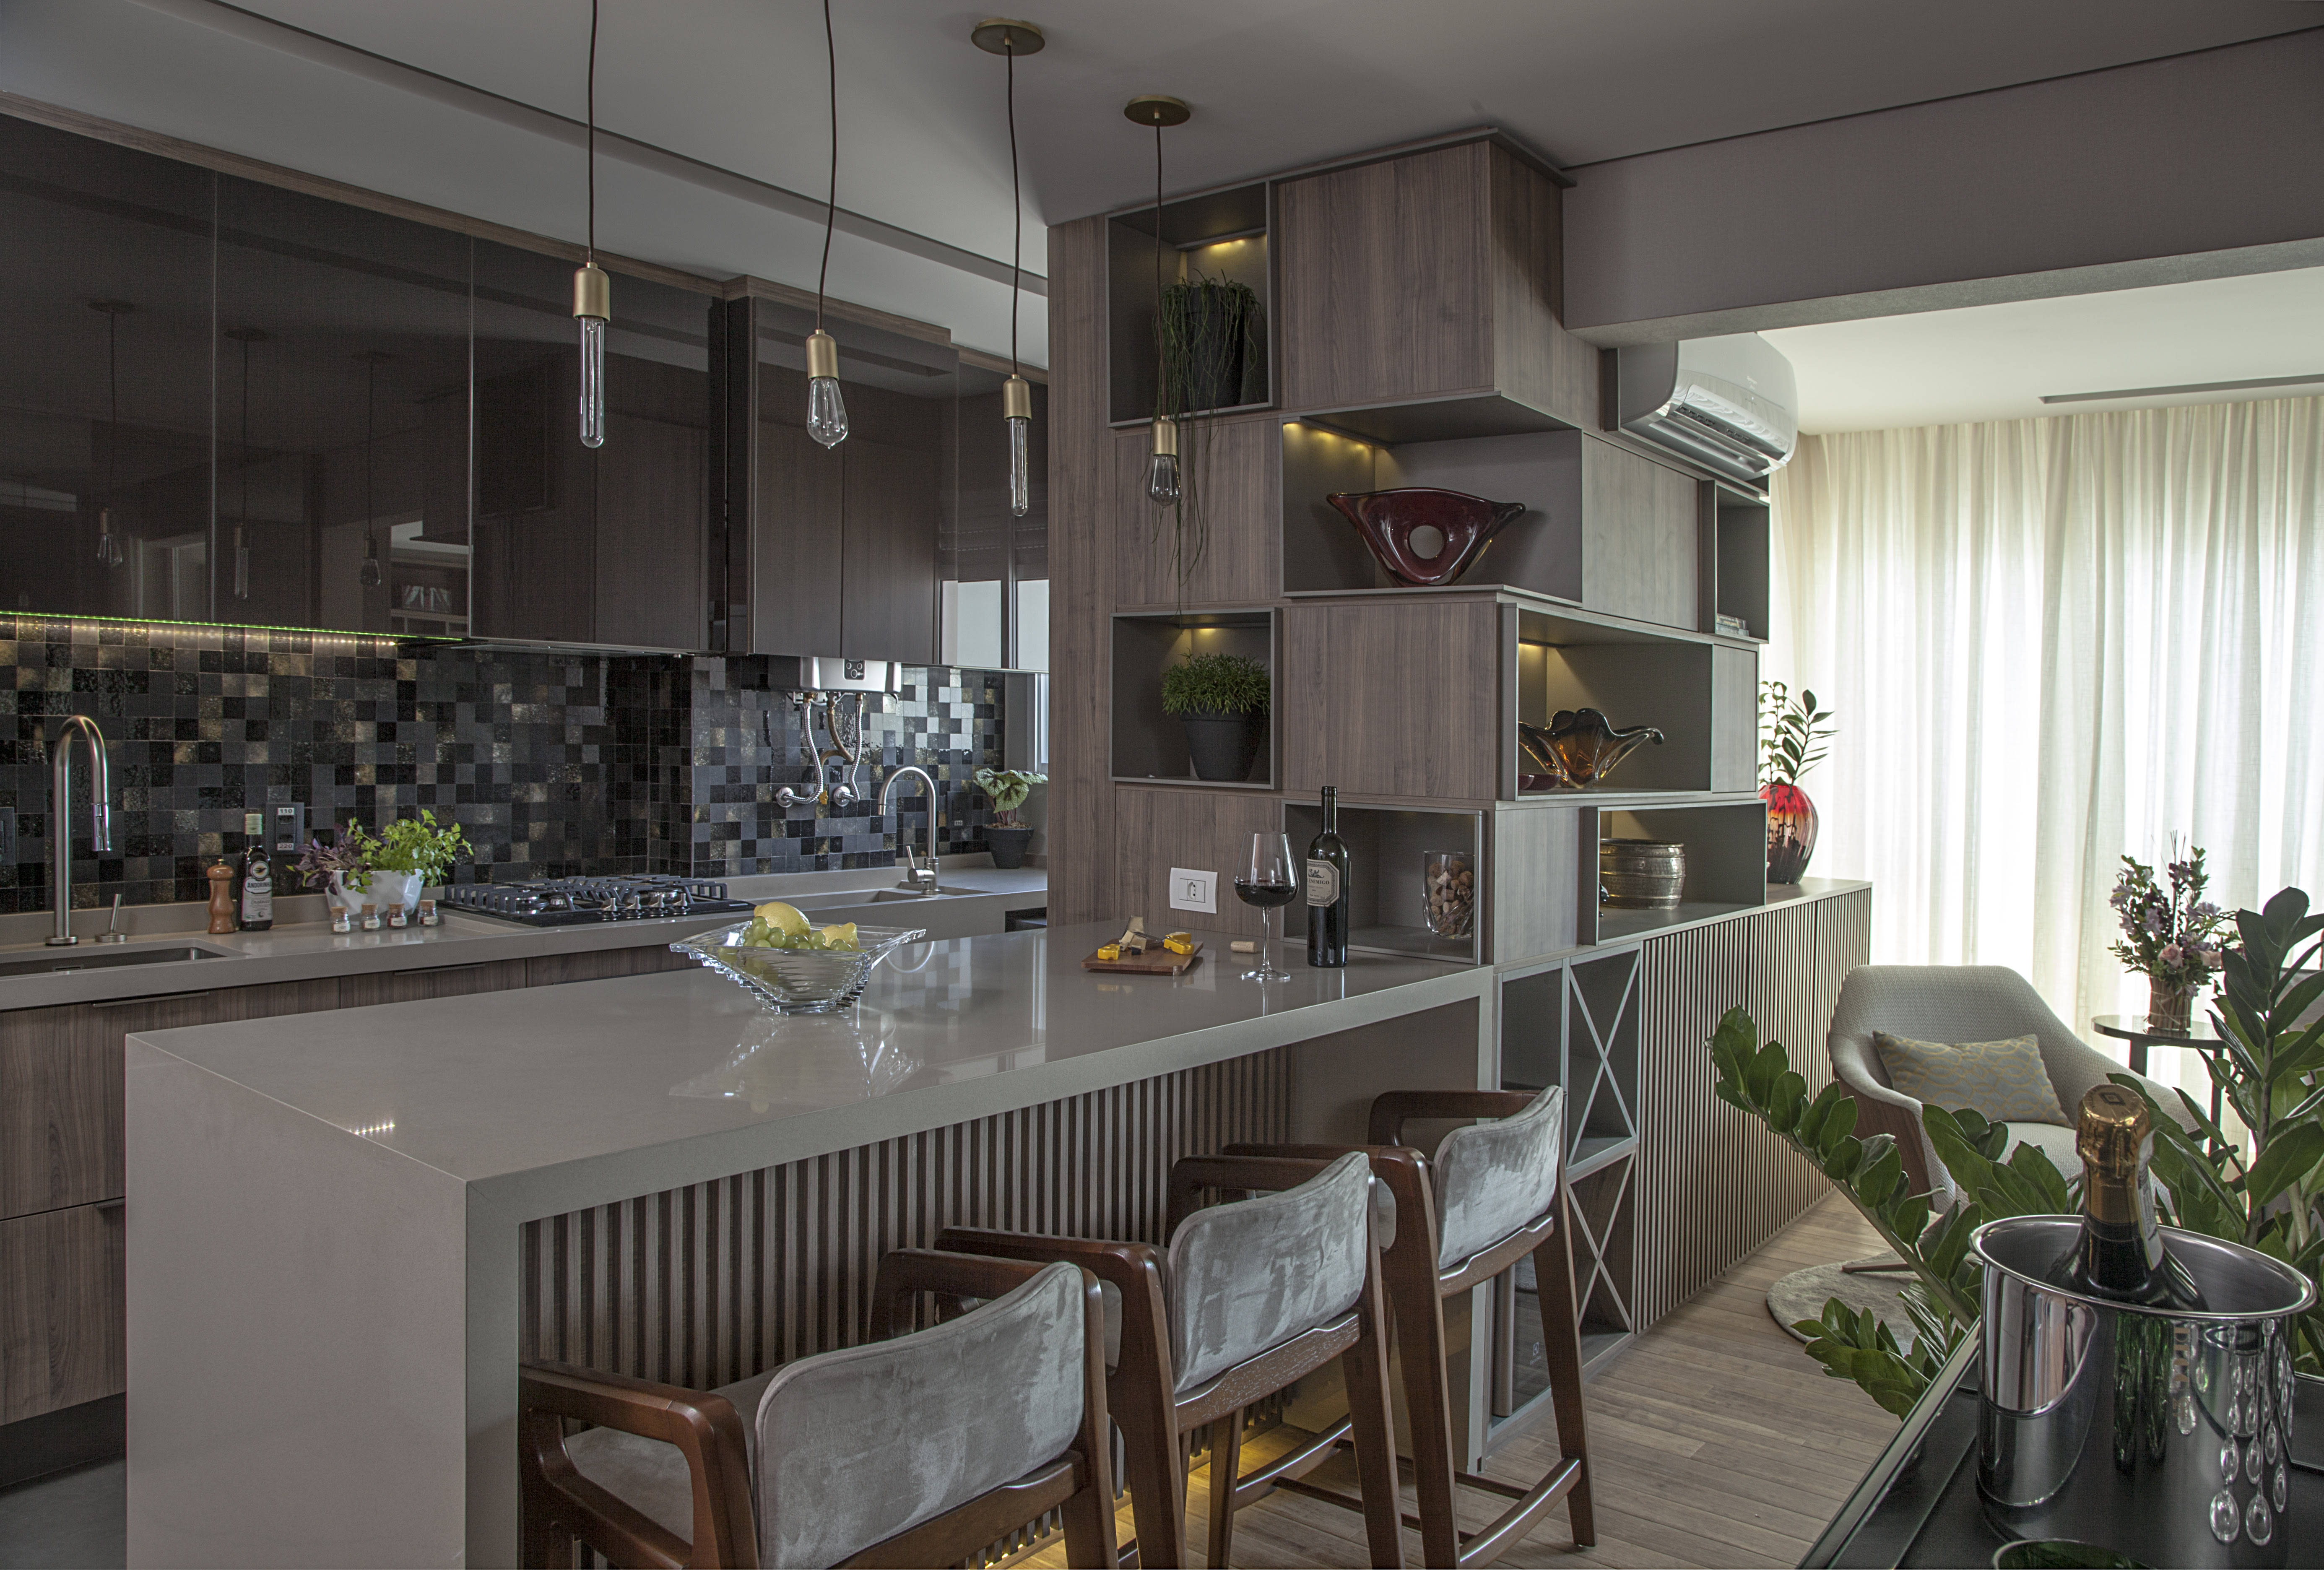  Neste projeto com mobiliário SCA Jardim Europa, bancada serve de apoio para quem cozinha e para as rápidas refeições do dia a dia | Projeto FHAS Arquitetura | Foto Luis Gomes

 